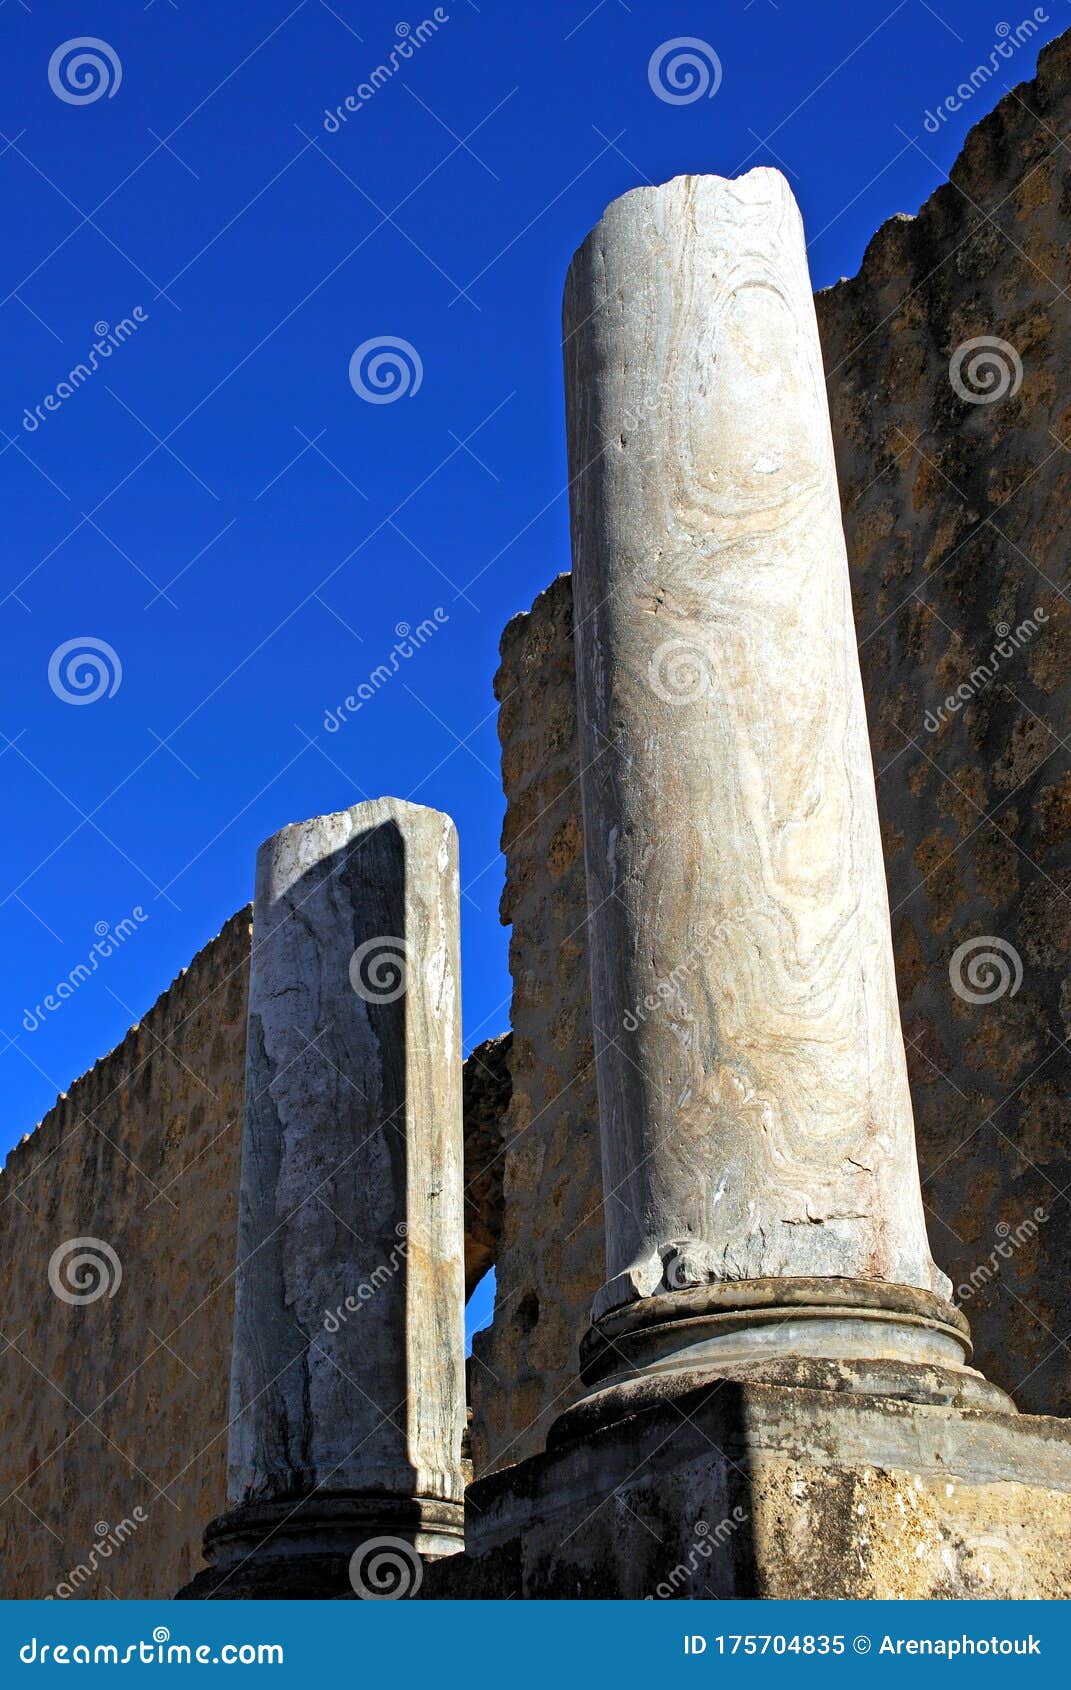 marble columns, santiponce, spain.